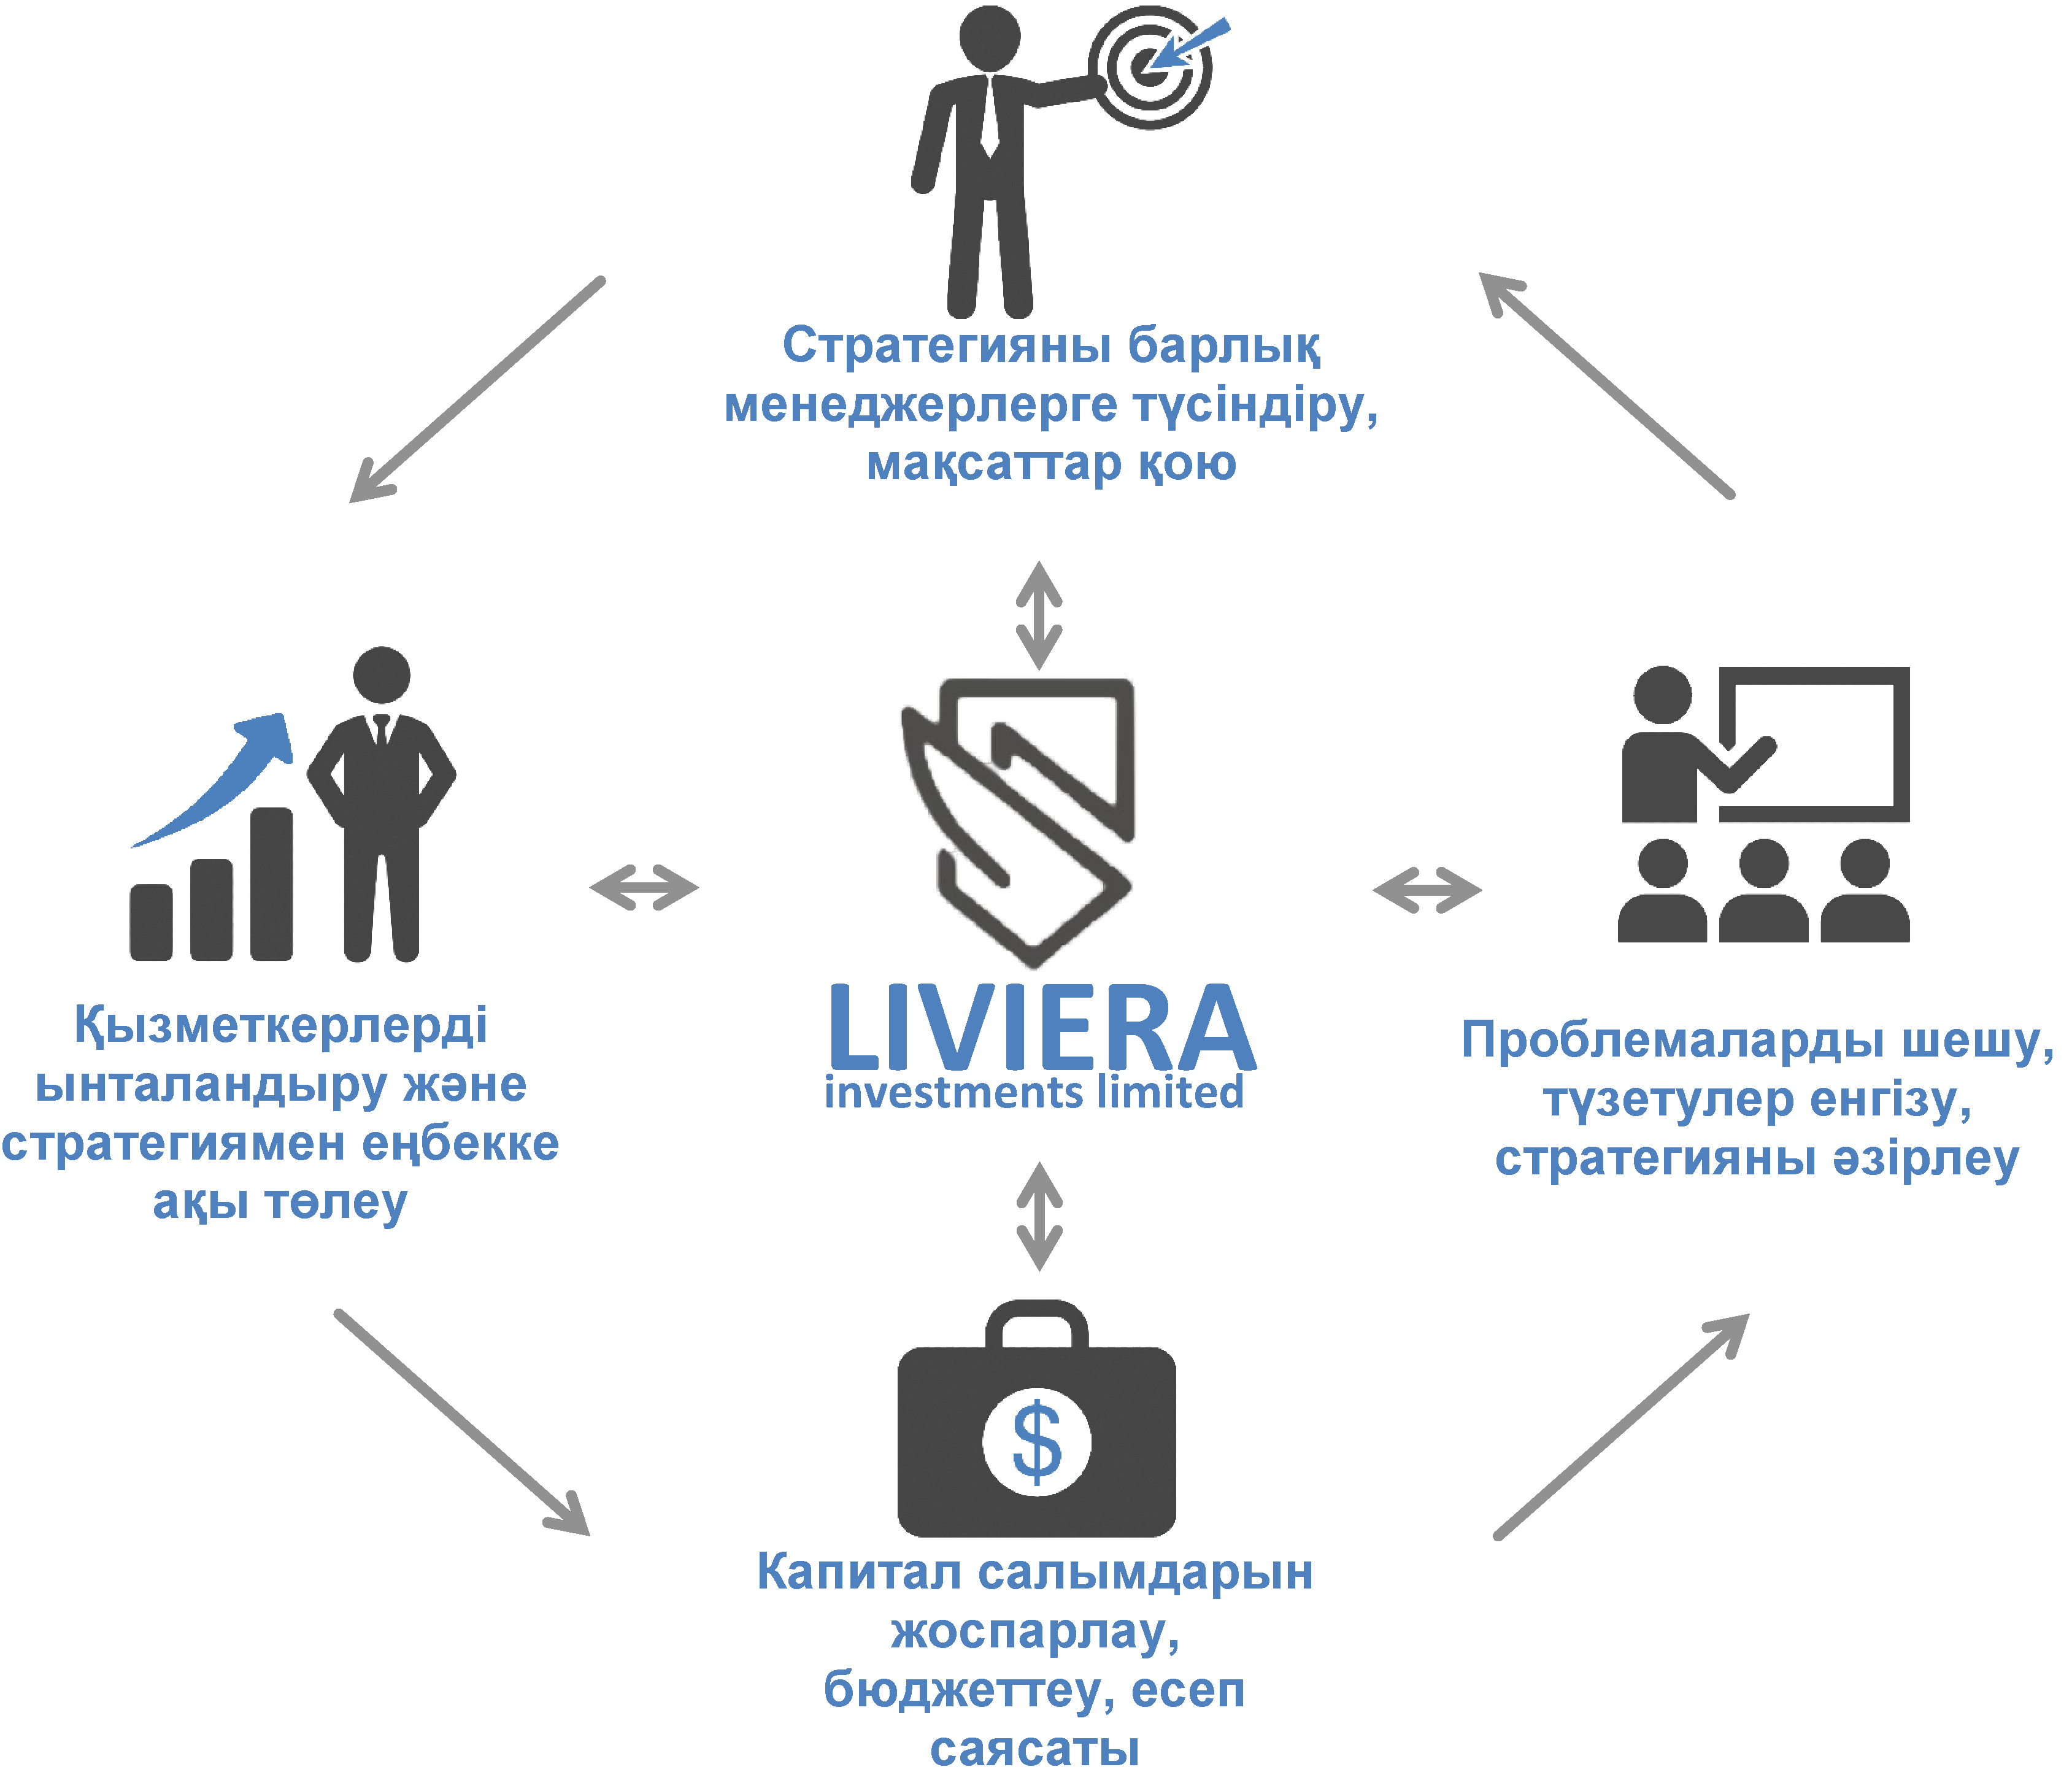 Liviera Investments Limited сауда консалтинг кезеңдері